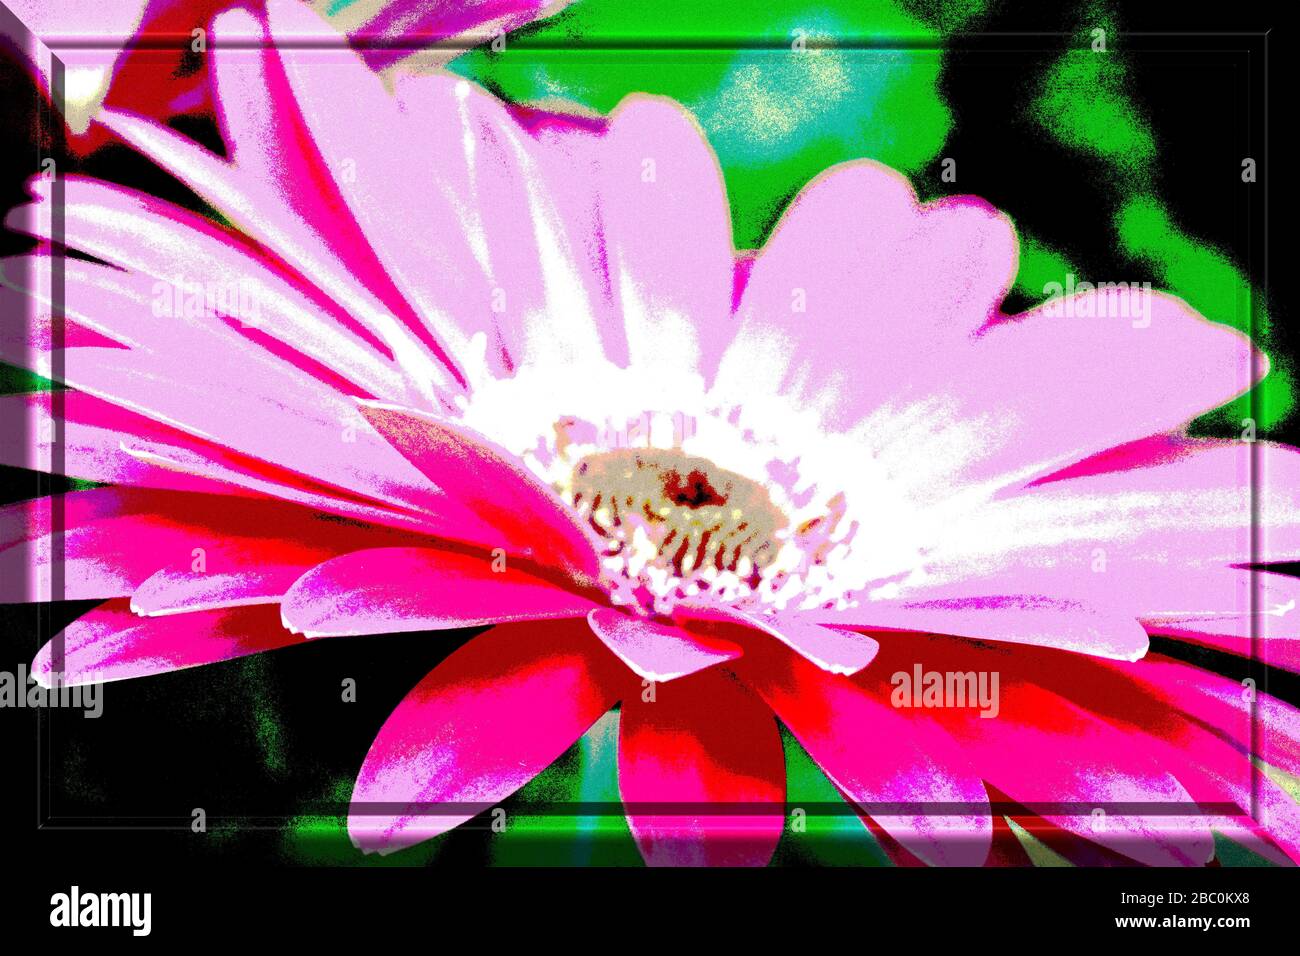 Fotografia di un fiore modificato con l'illustrazione a colori della cornice 3D. Macro-fotografia di un fiore come immagine sorgente. Foto Stock